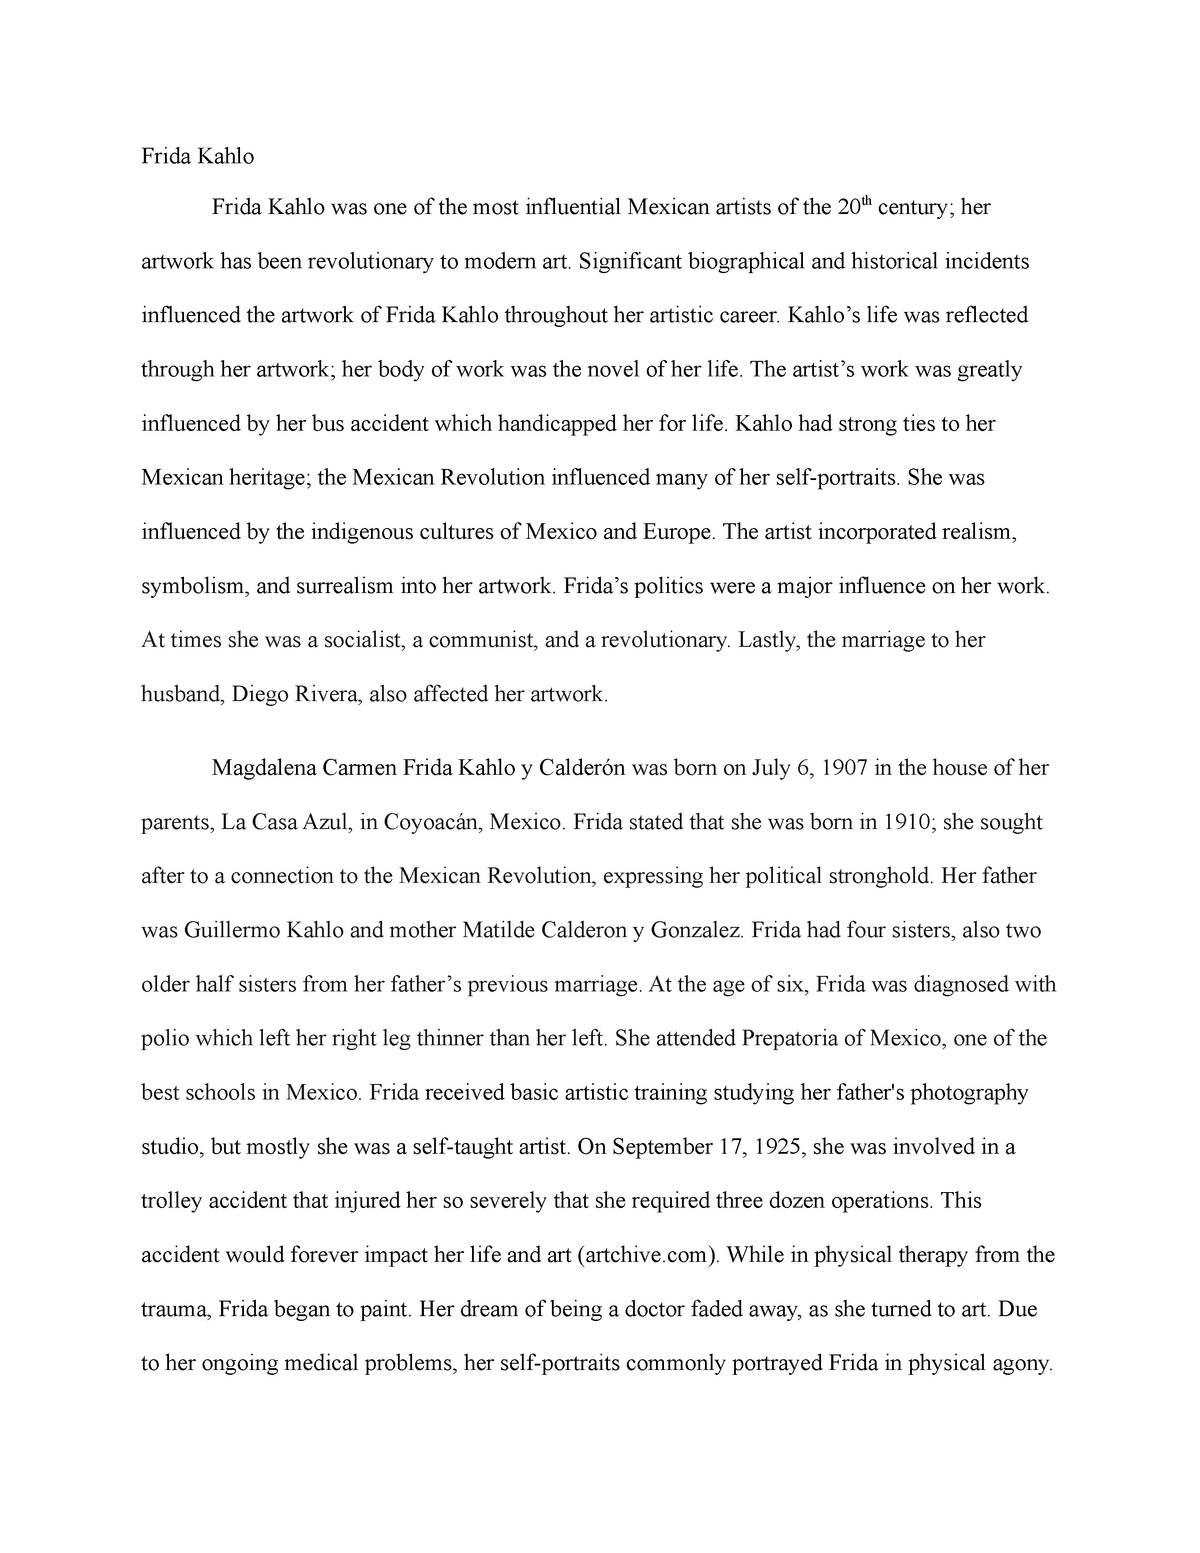 hooks for frida kahlo essay